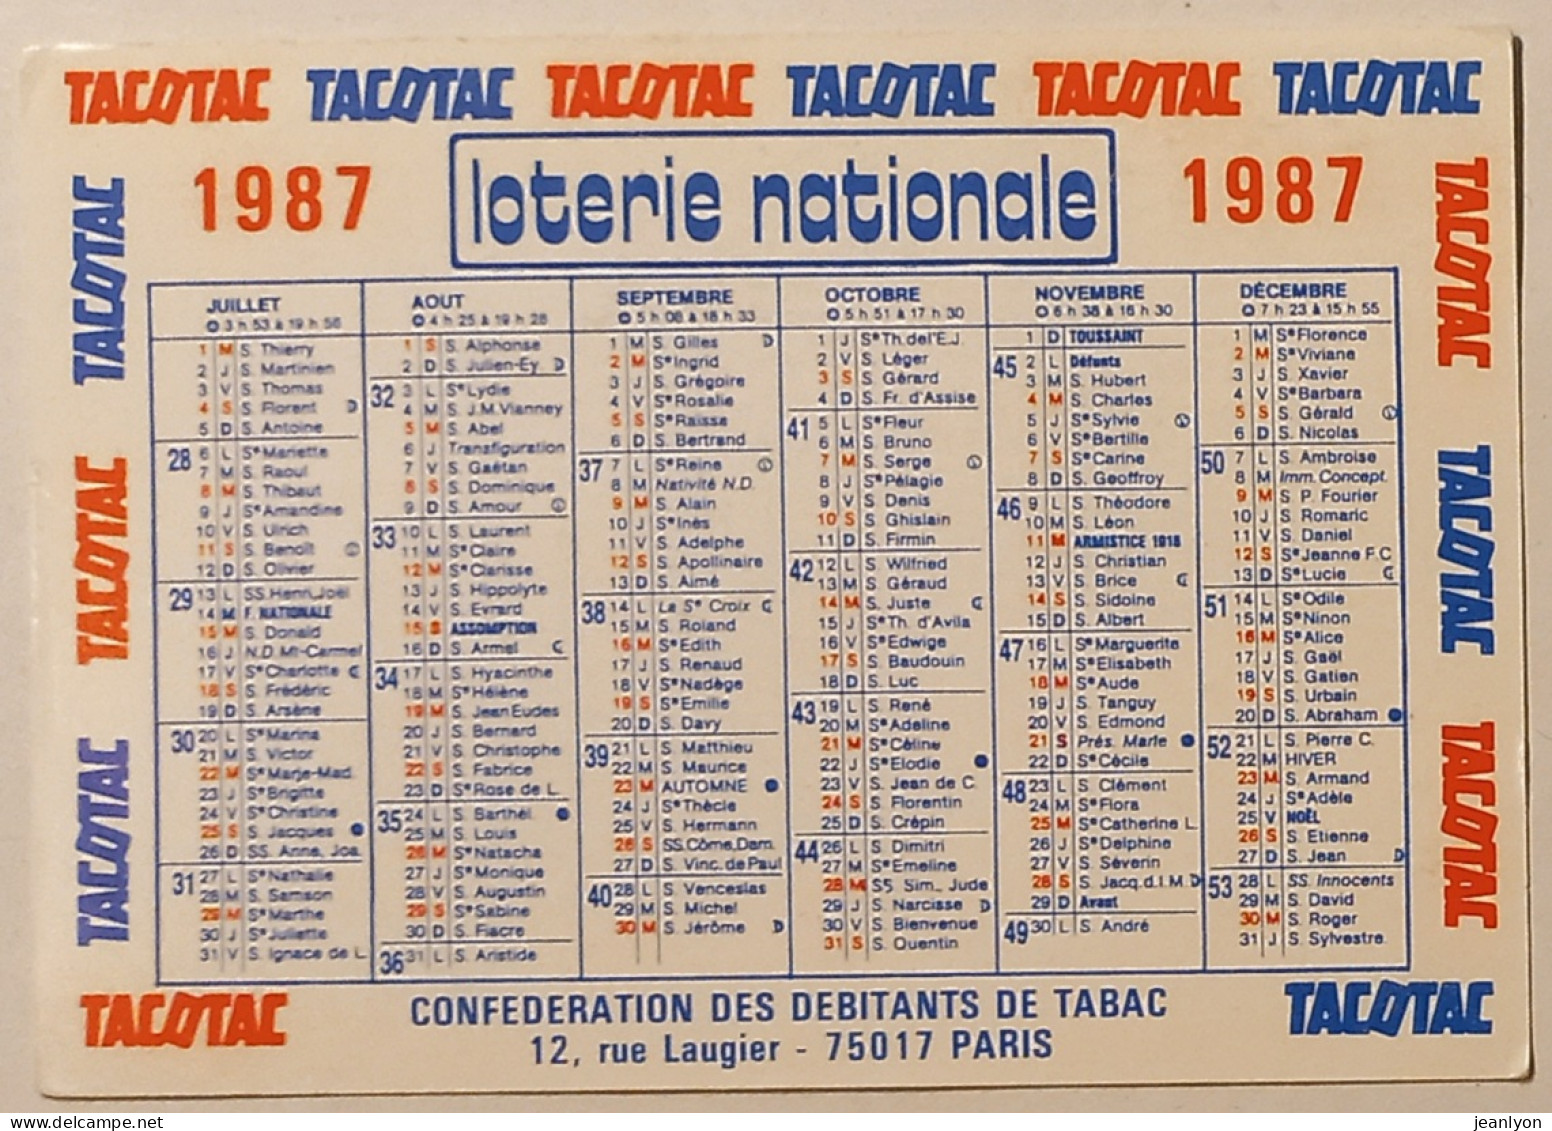 LOTERIE NATIONALE - TACOTAC - Débitants De Tabac Paris 17 - Calendrier Poche 1987 - Small : 1981-90